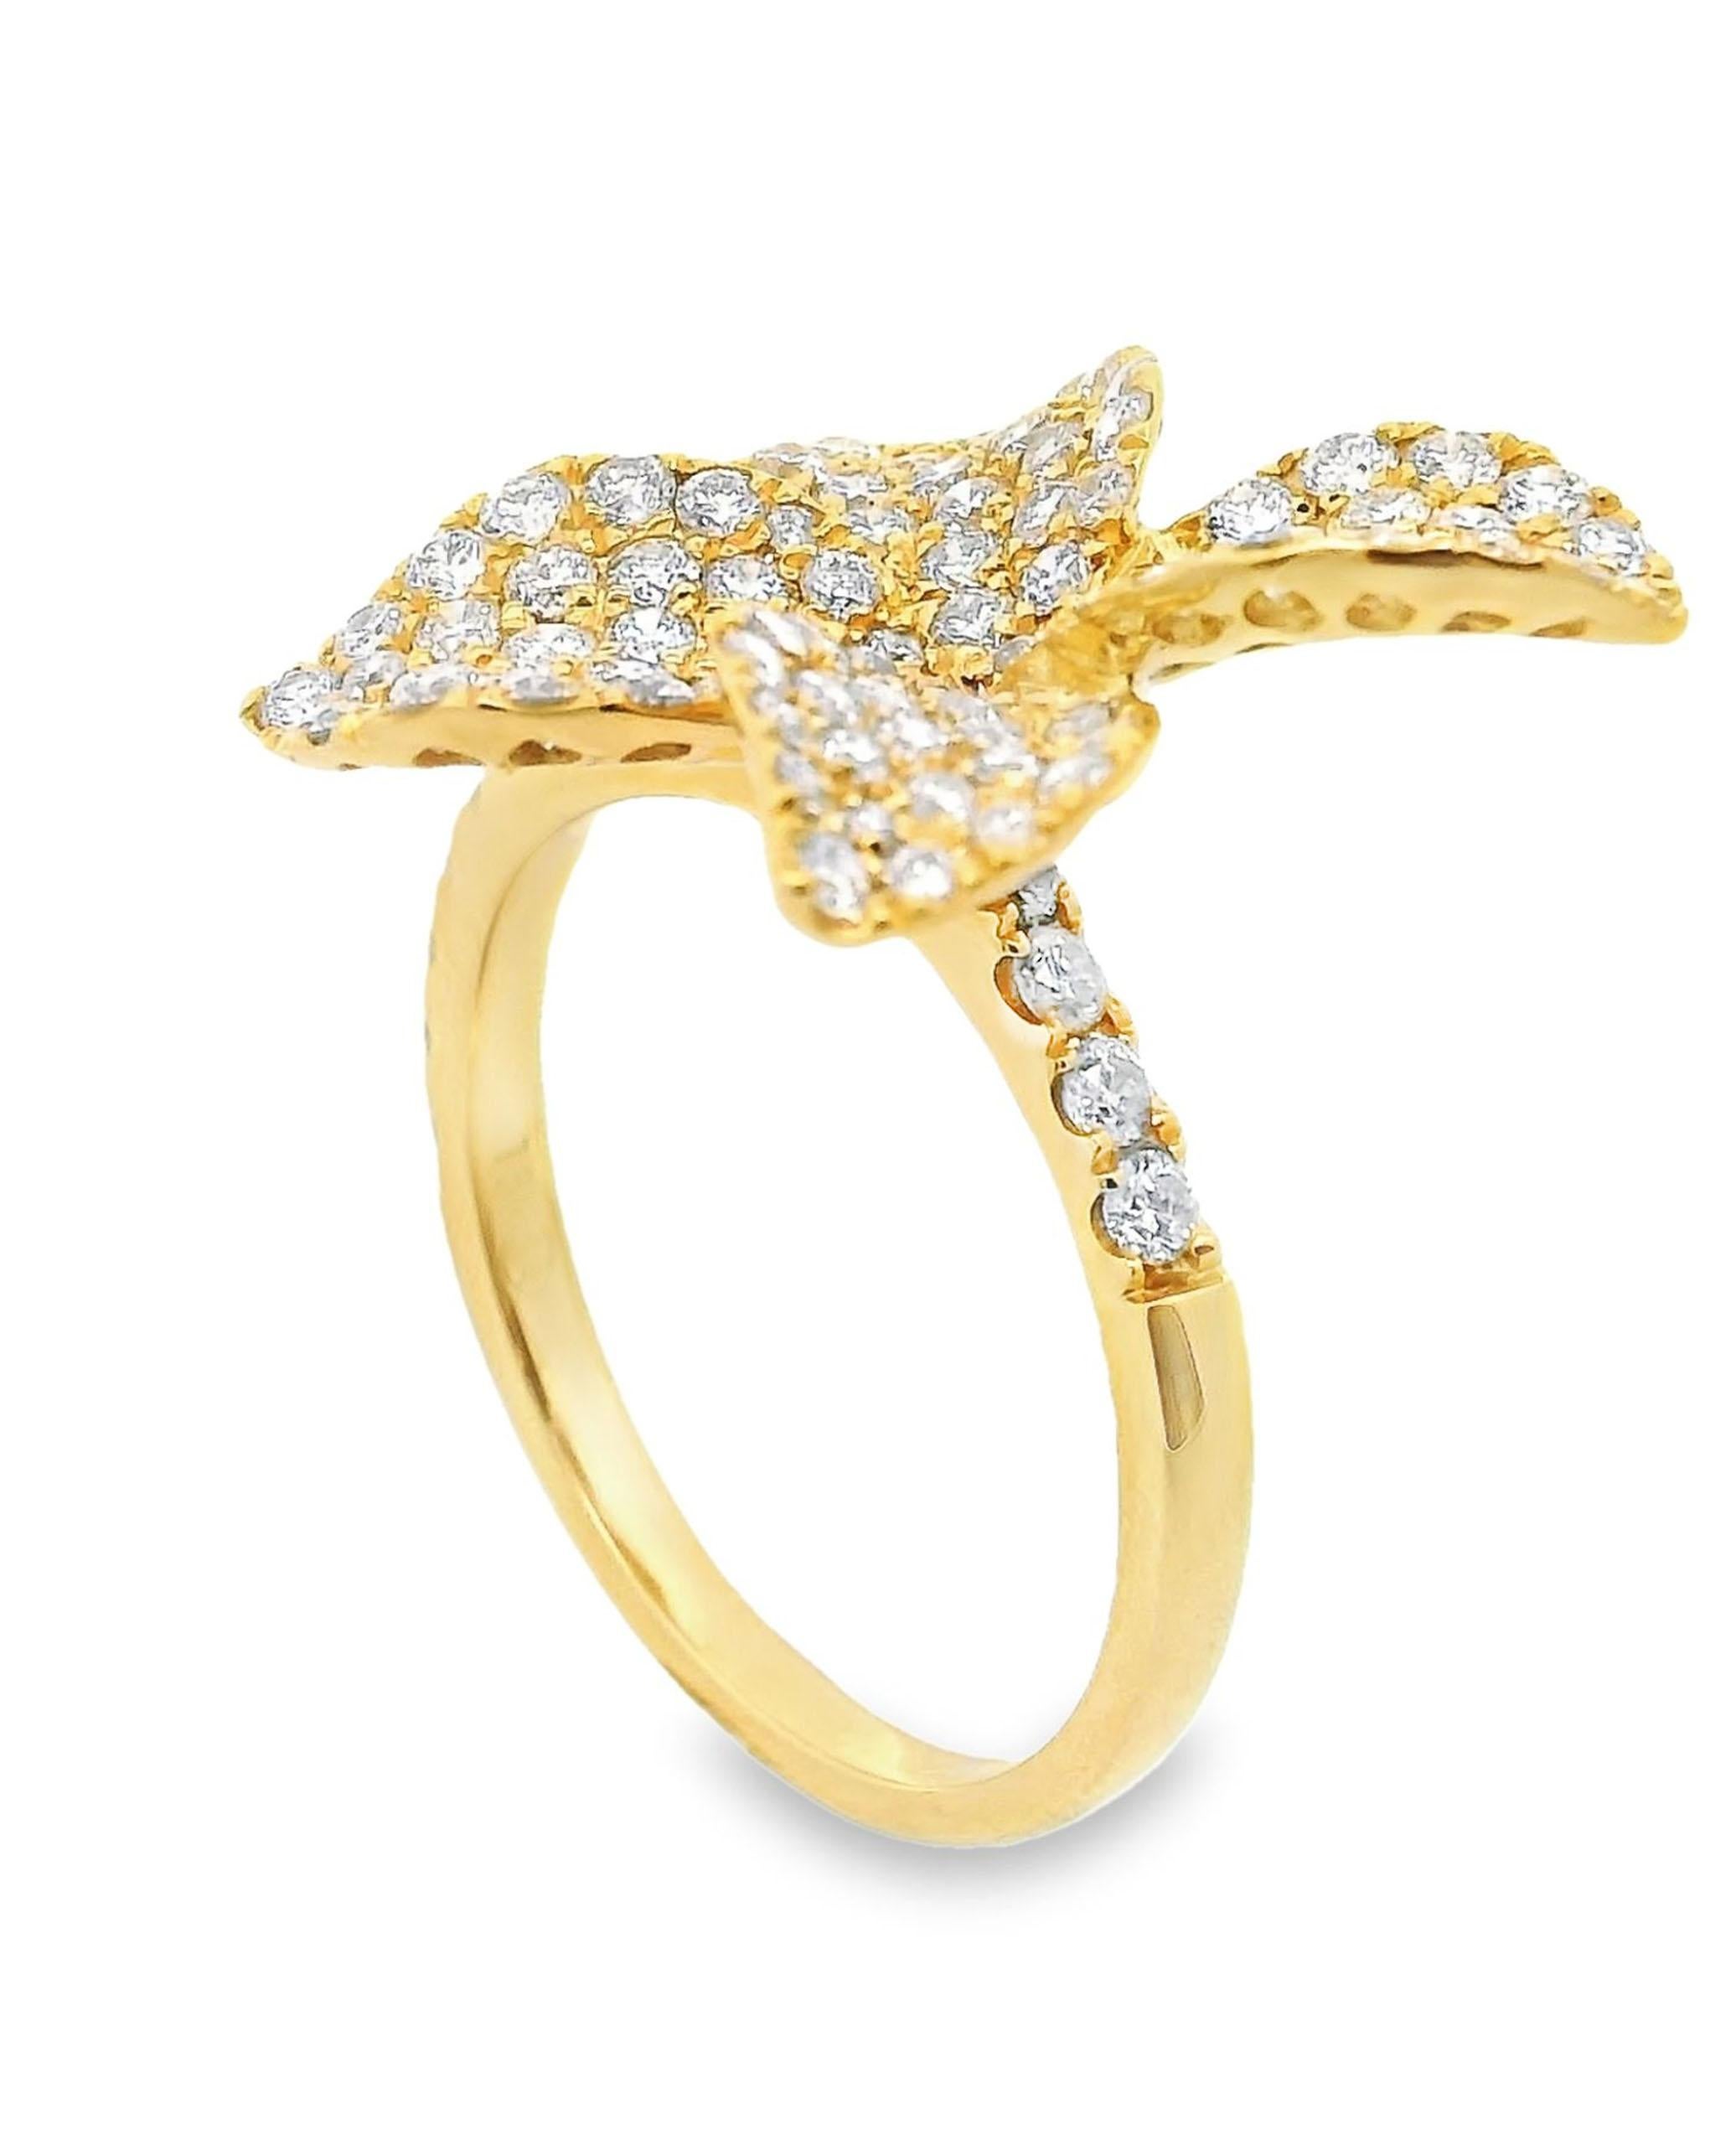 Blumenring aus 18 Karat Gelbgold mit runden Diamanten im Brillantschliff von insgesamt 1,40 Karat.

* Diamanten sind H/I Farbe, SI Klarheit